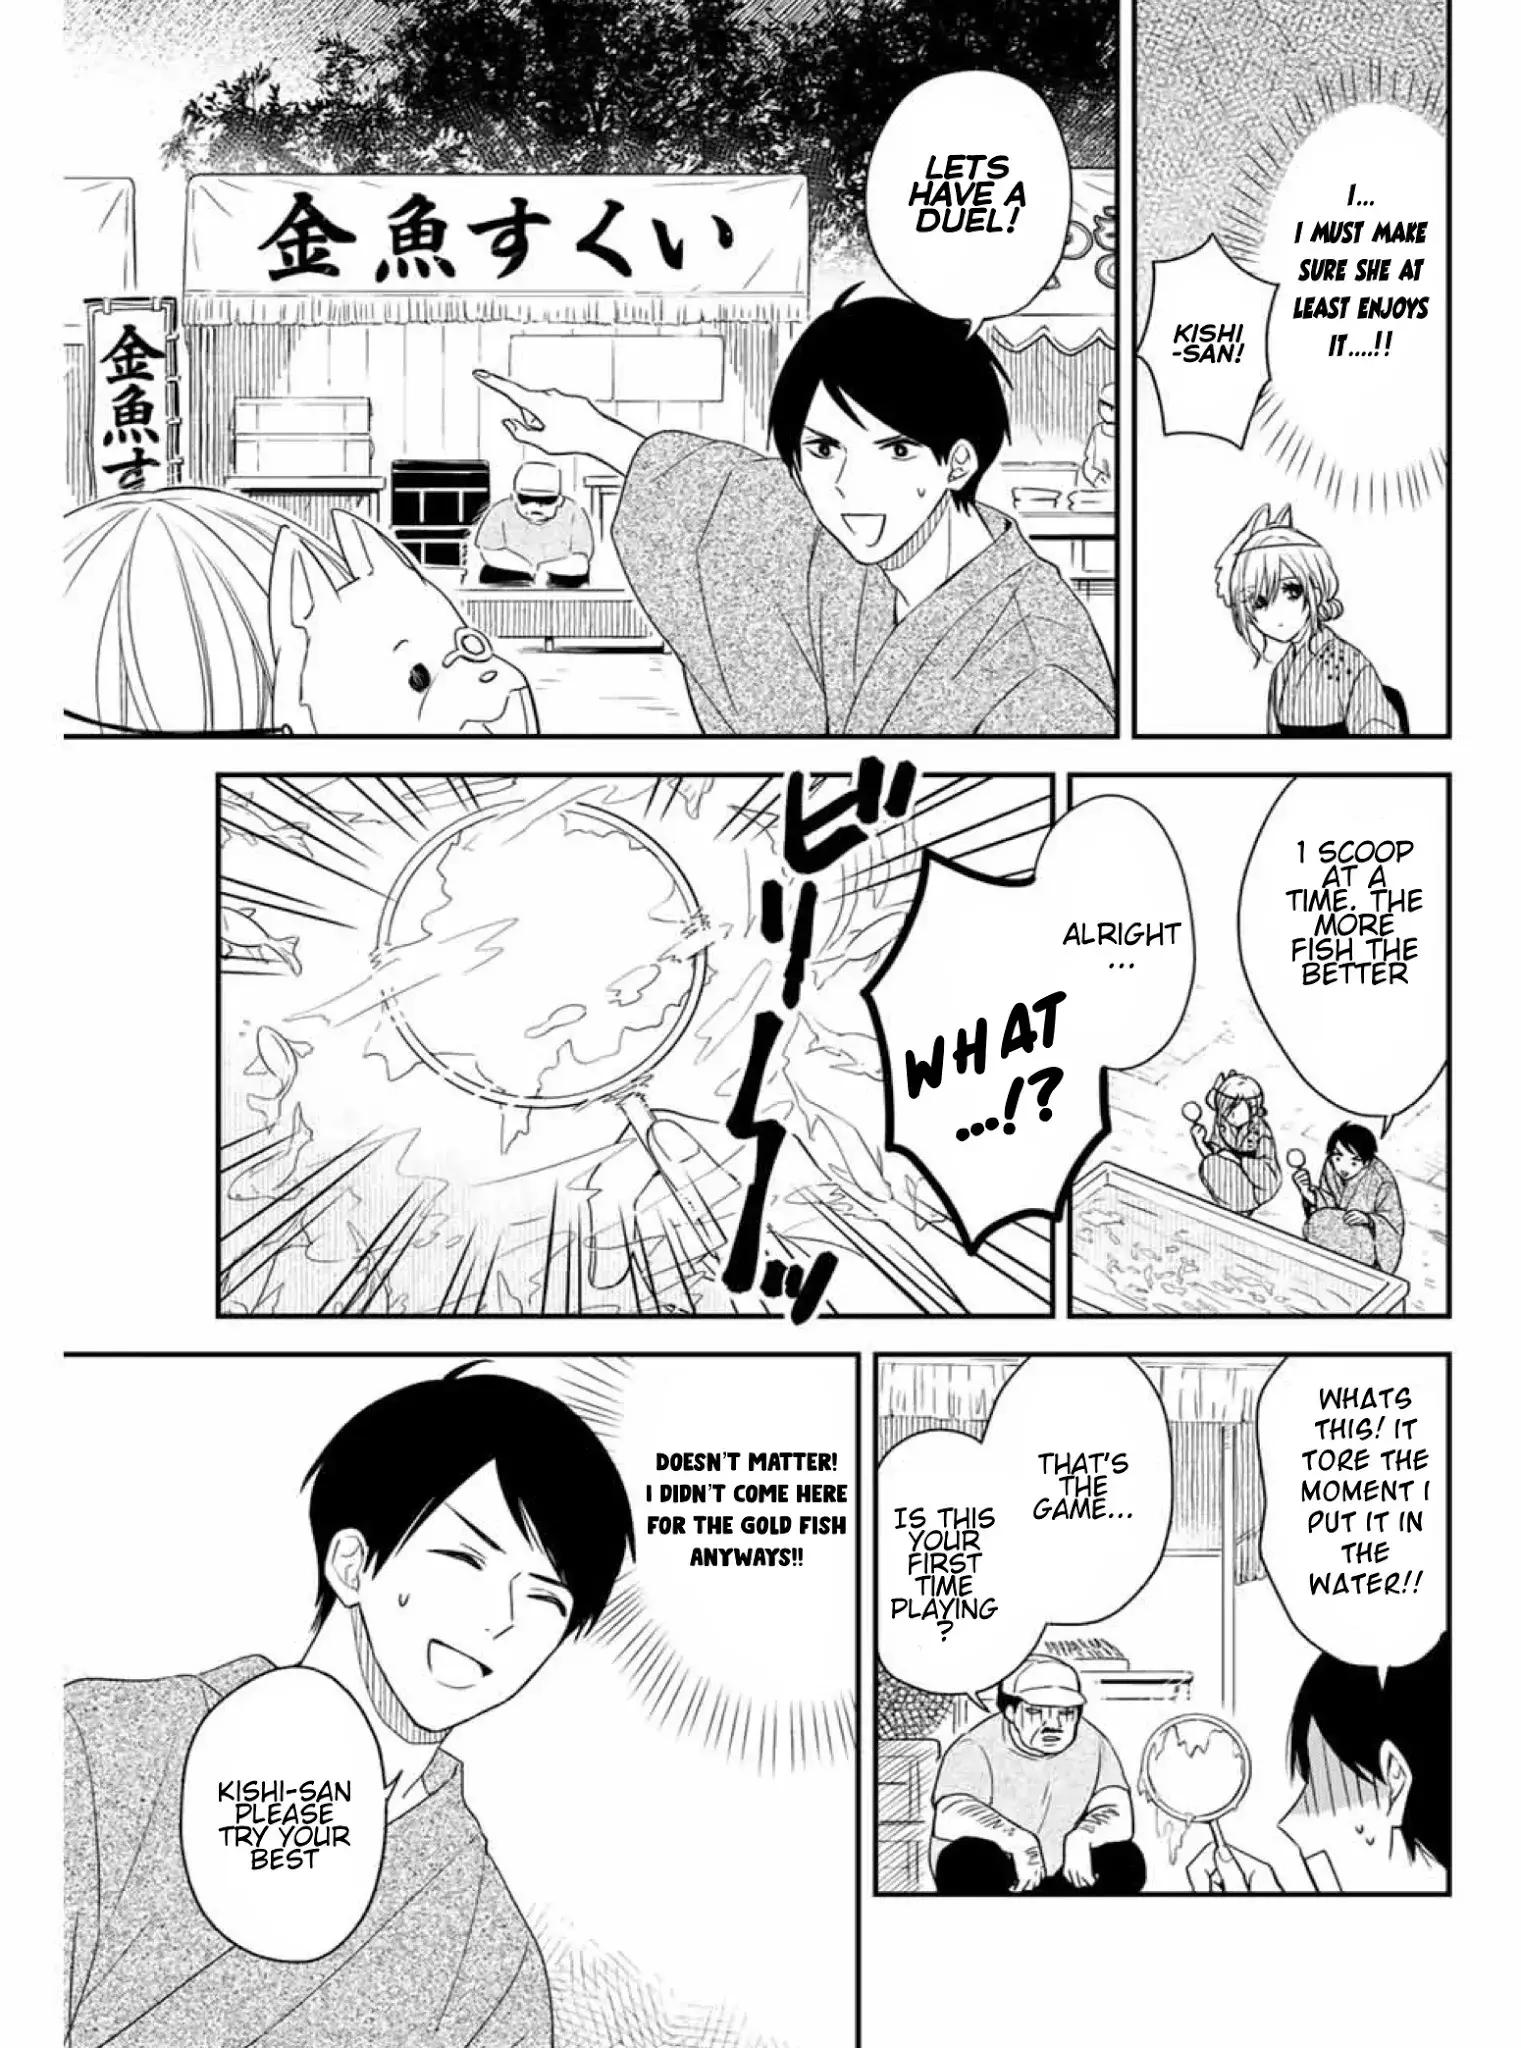 Maid No Kishi-San - 15 page 7